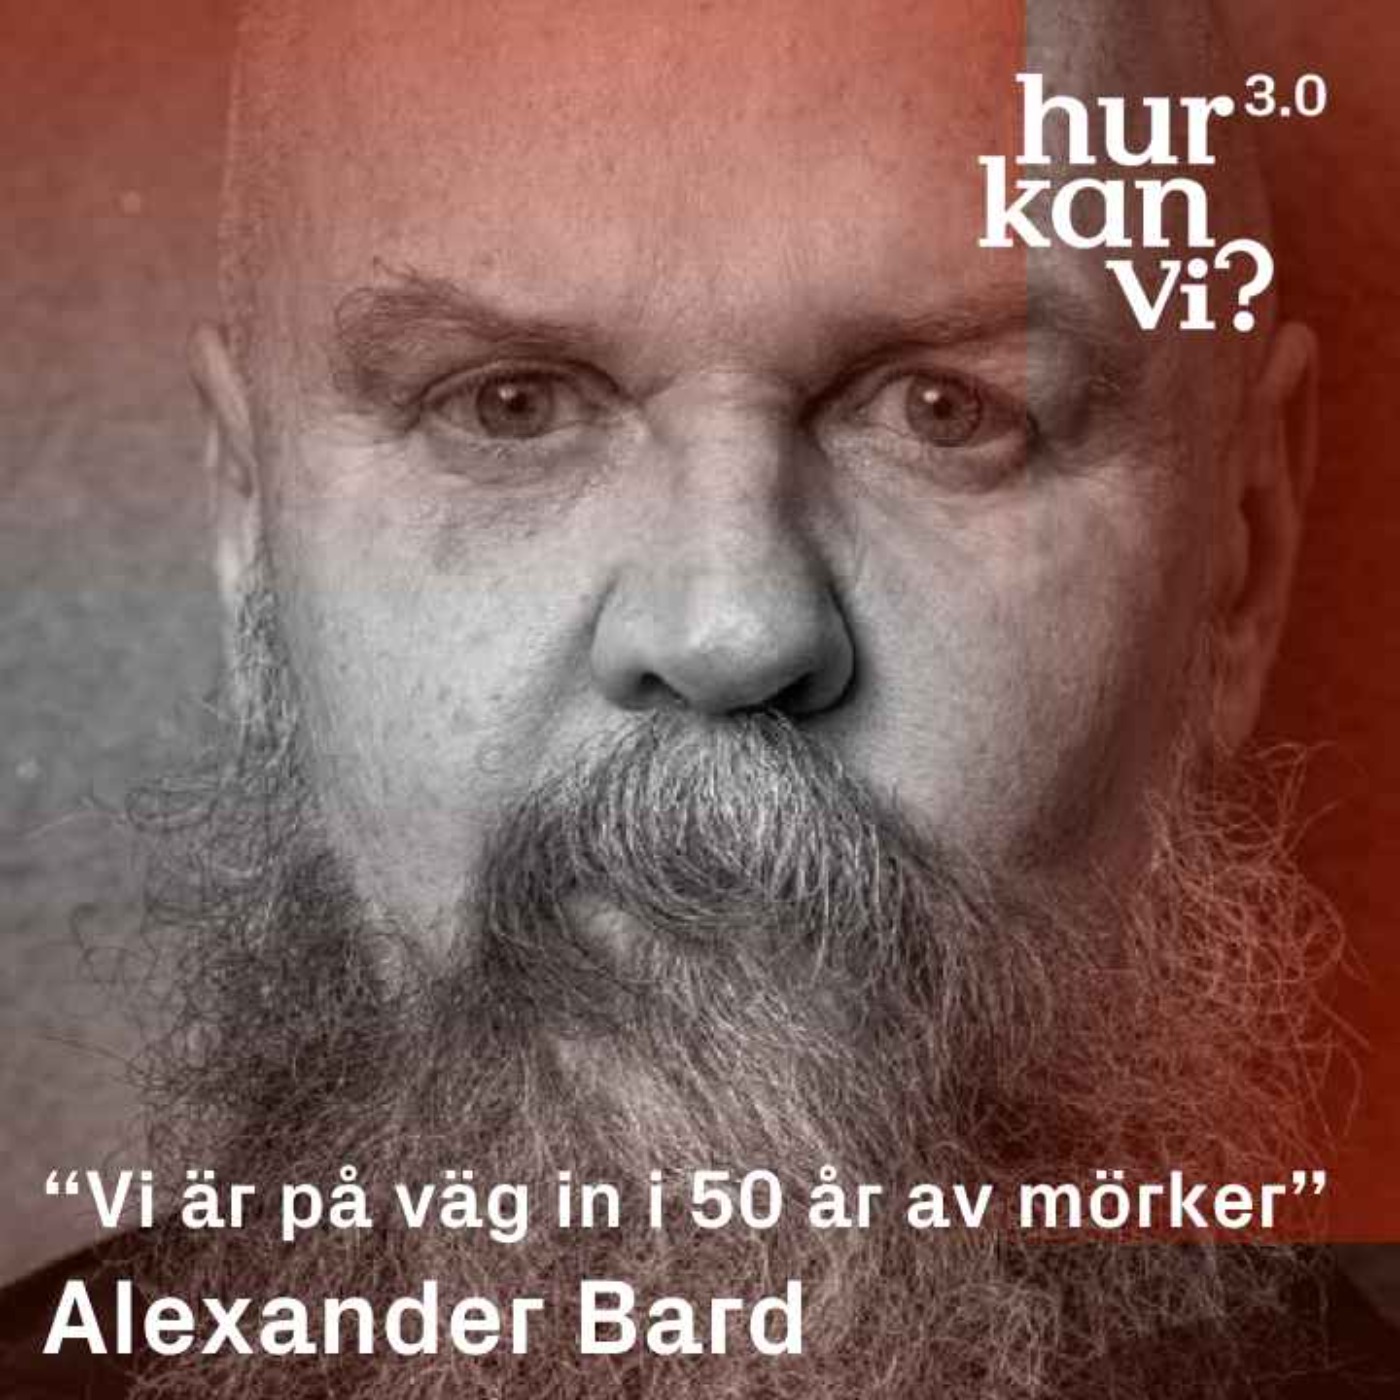 Alexander Bard - “Vi är på väg in i 50 år av mörker”